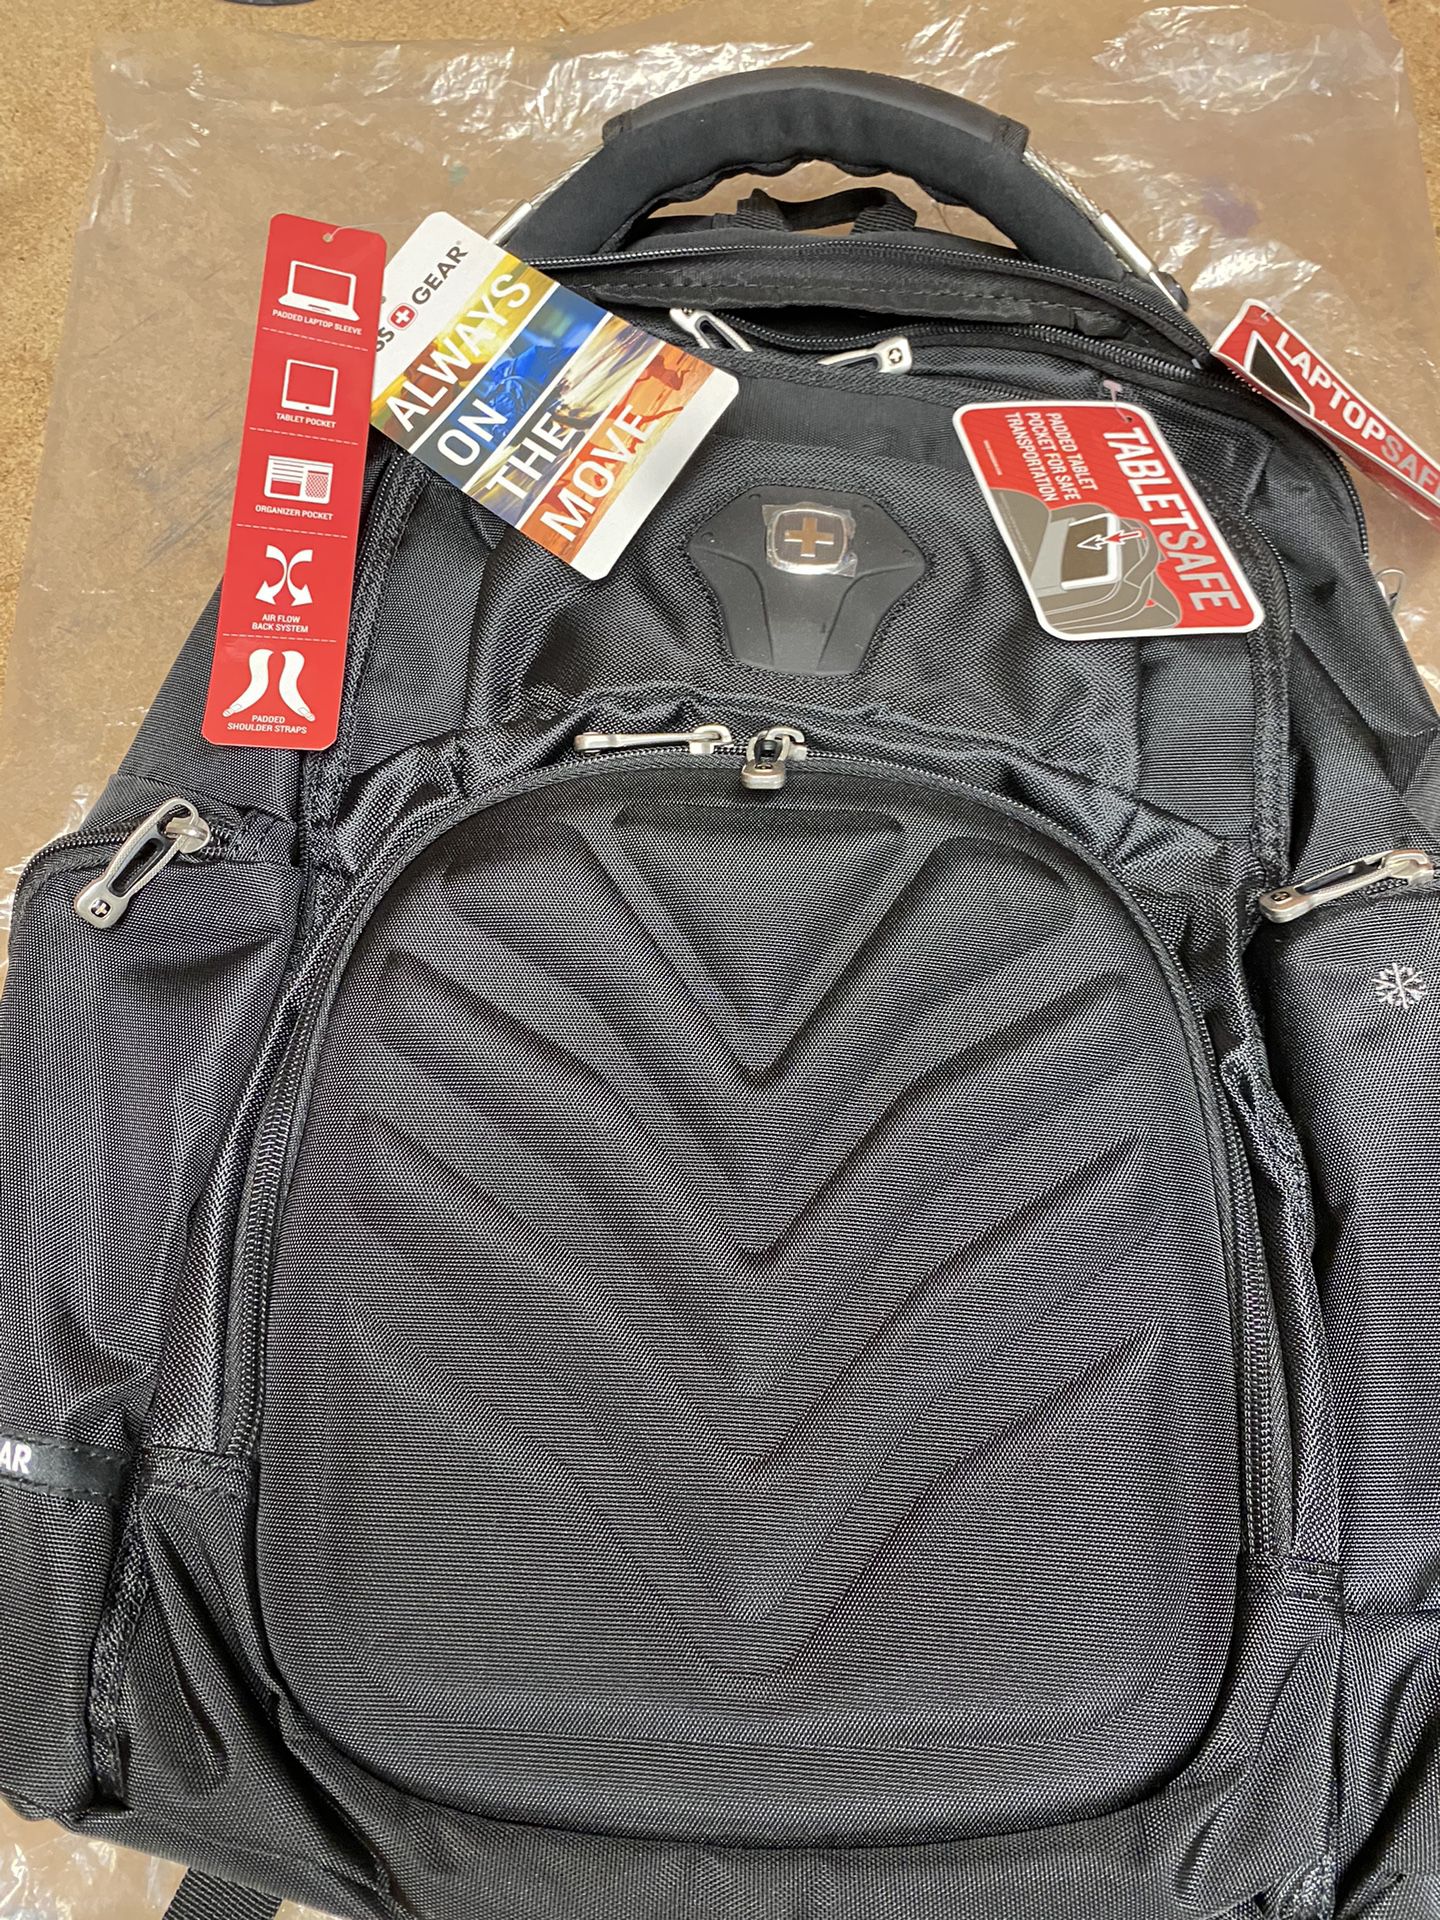 Swissgear Laptop Backpack-Black 